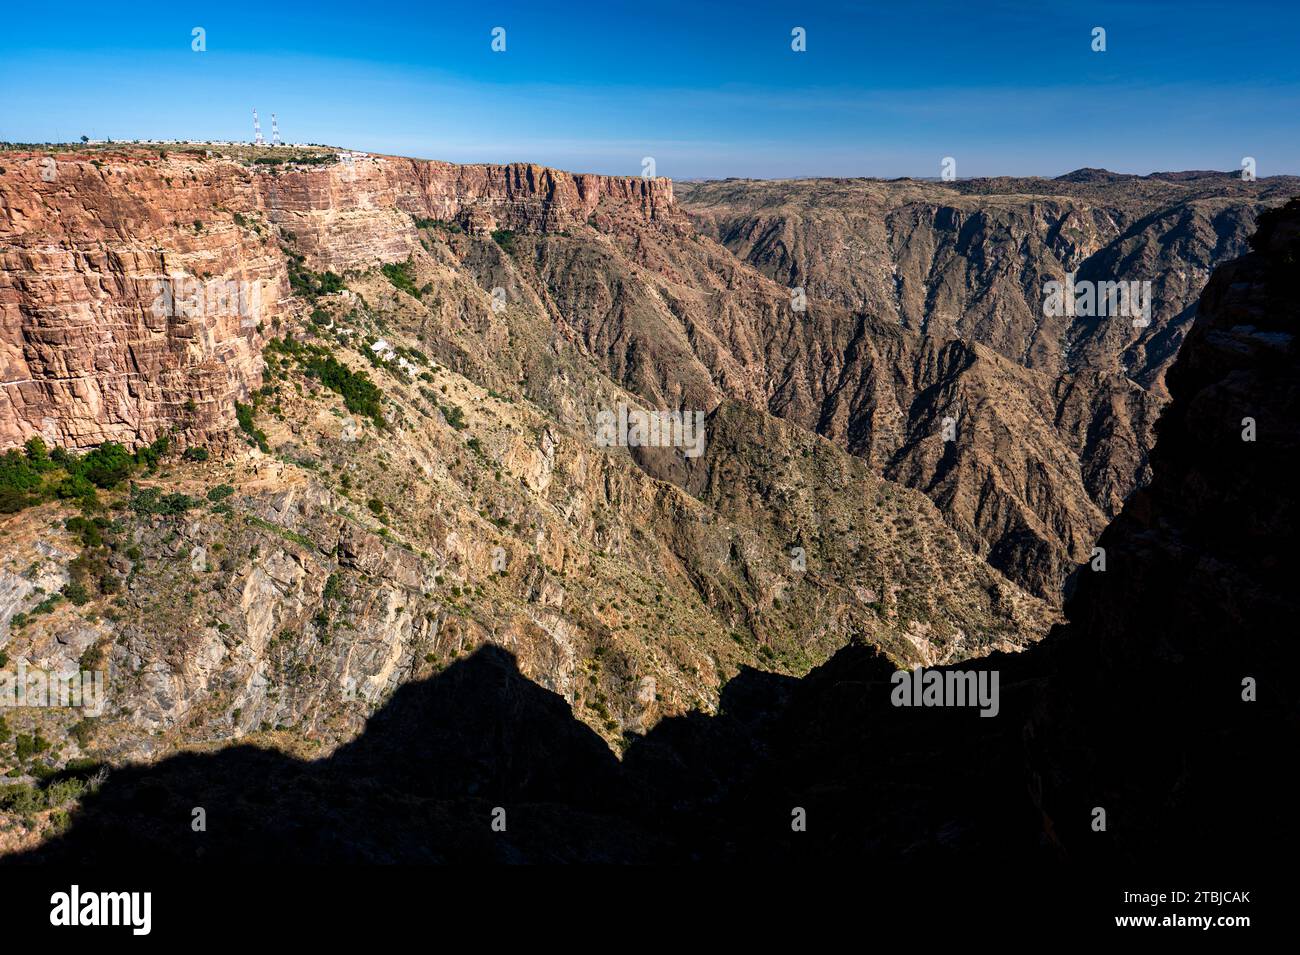 Die Asir Mountains vom Aussichtspunkt Habala (Al-Habalah), eines der beliebtesten Reiseziele in Saudi-Arabien. Stockfoto